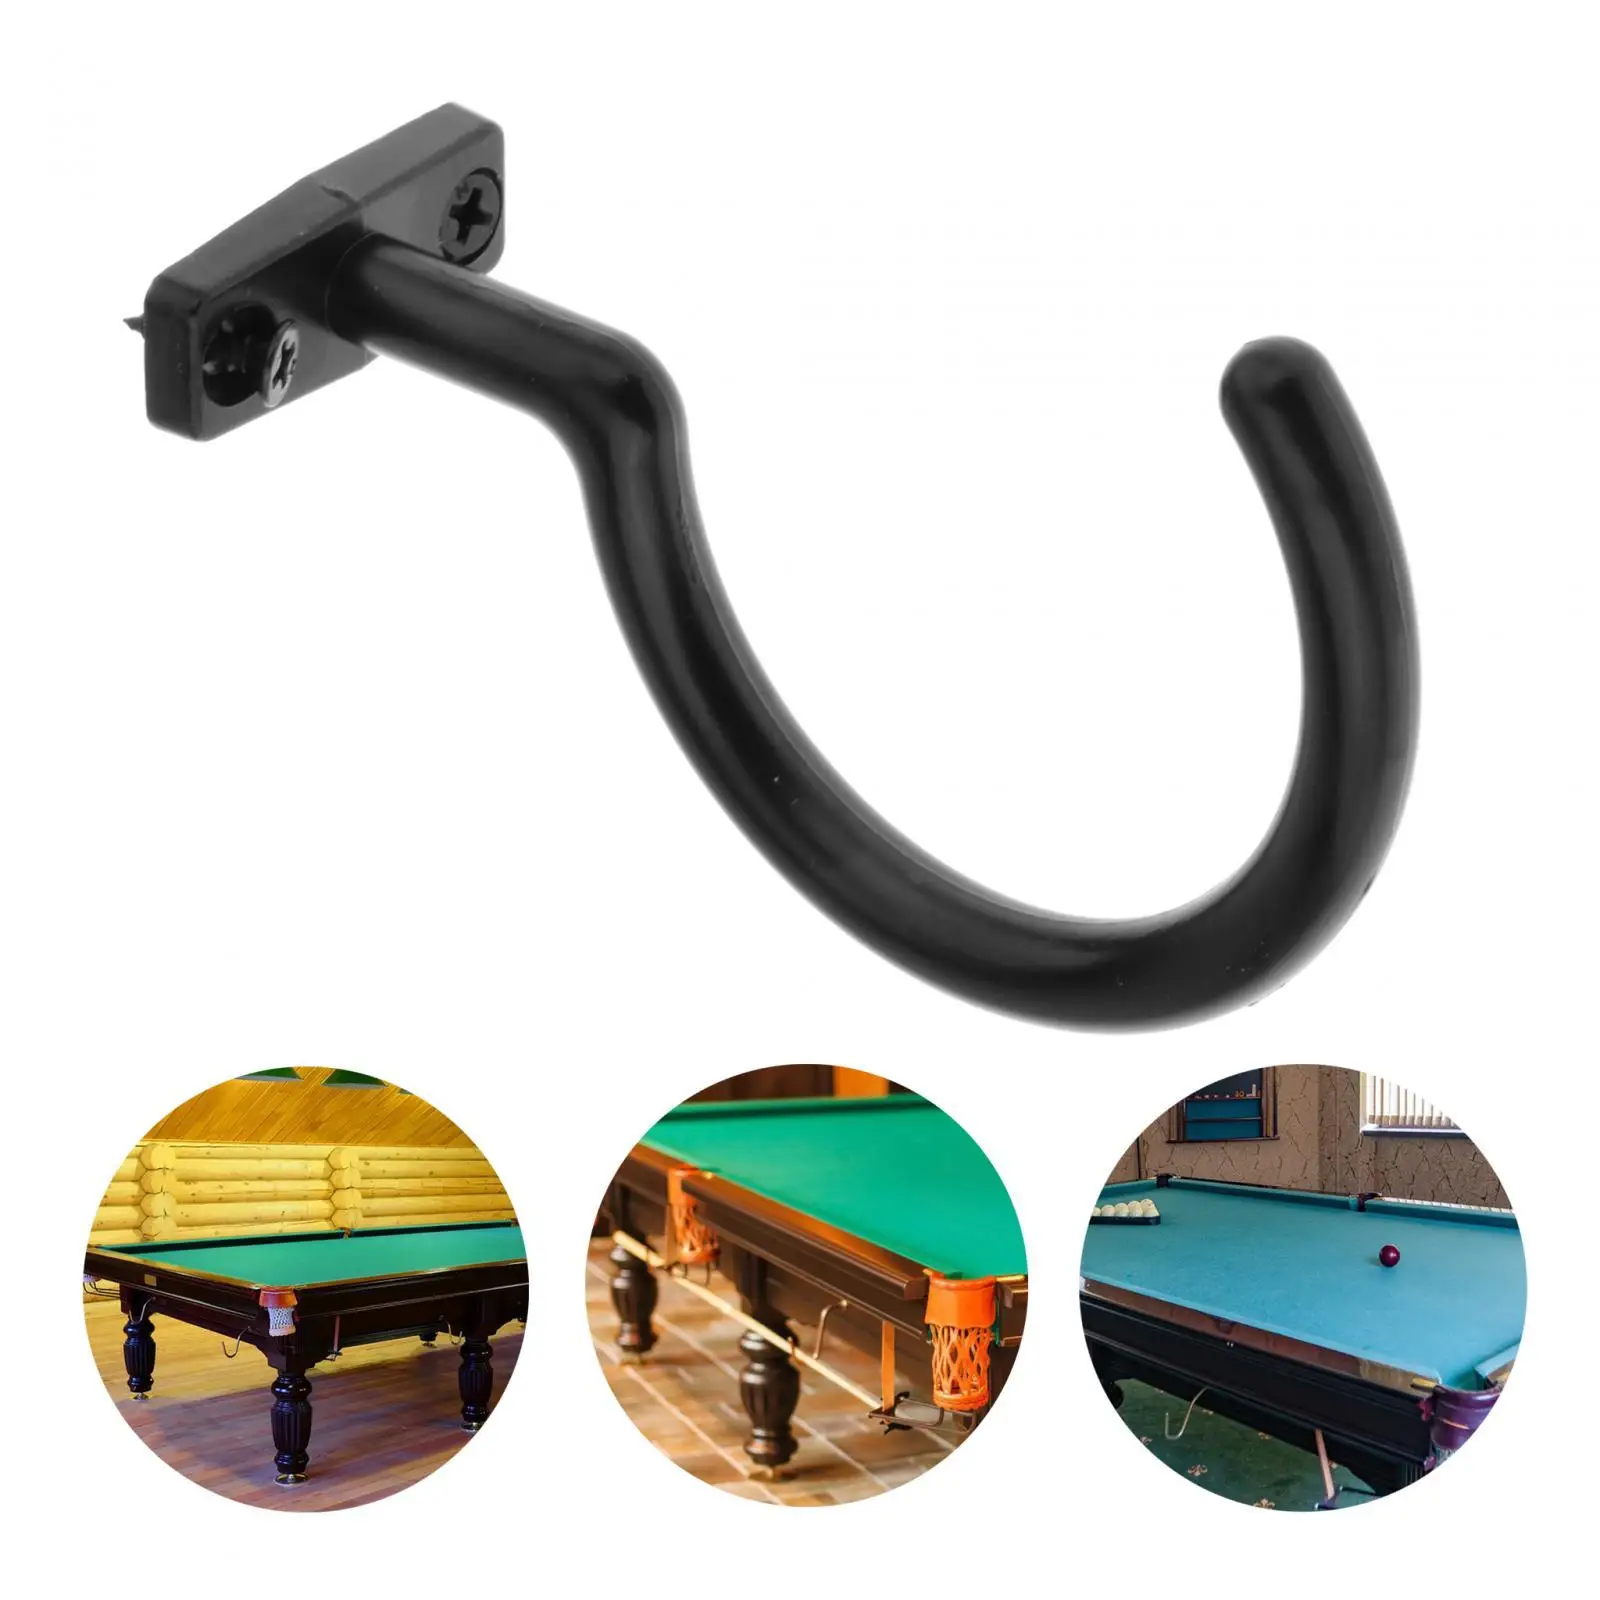 Snooker Billiard Cue Hook with 2 Screws Metal Snooker Pool Cue Racks for Indoor Games Snooker Table Pool Table Accessories